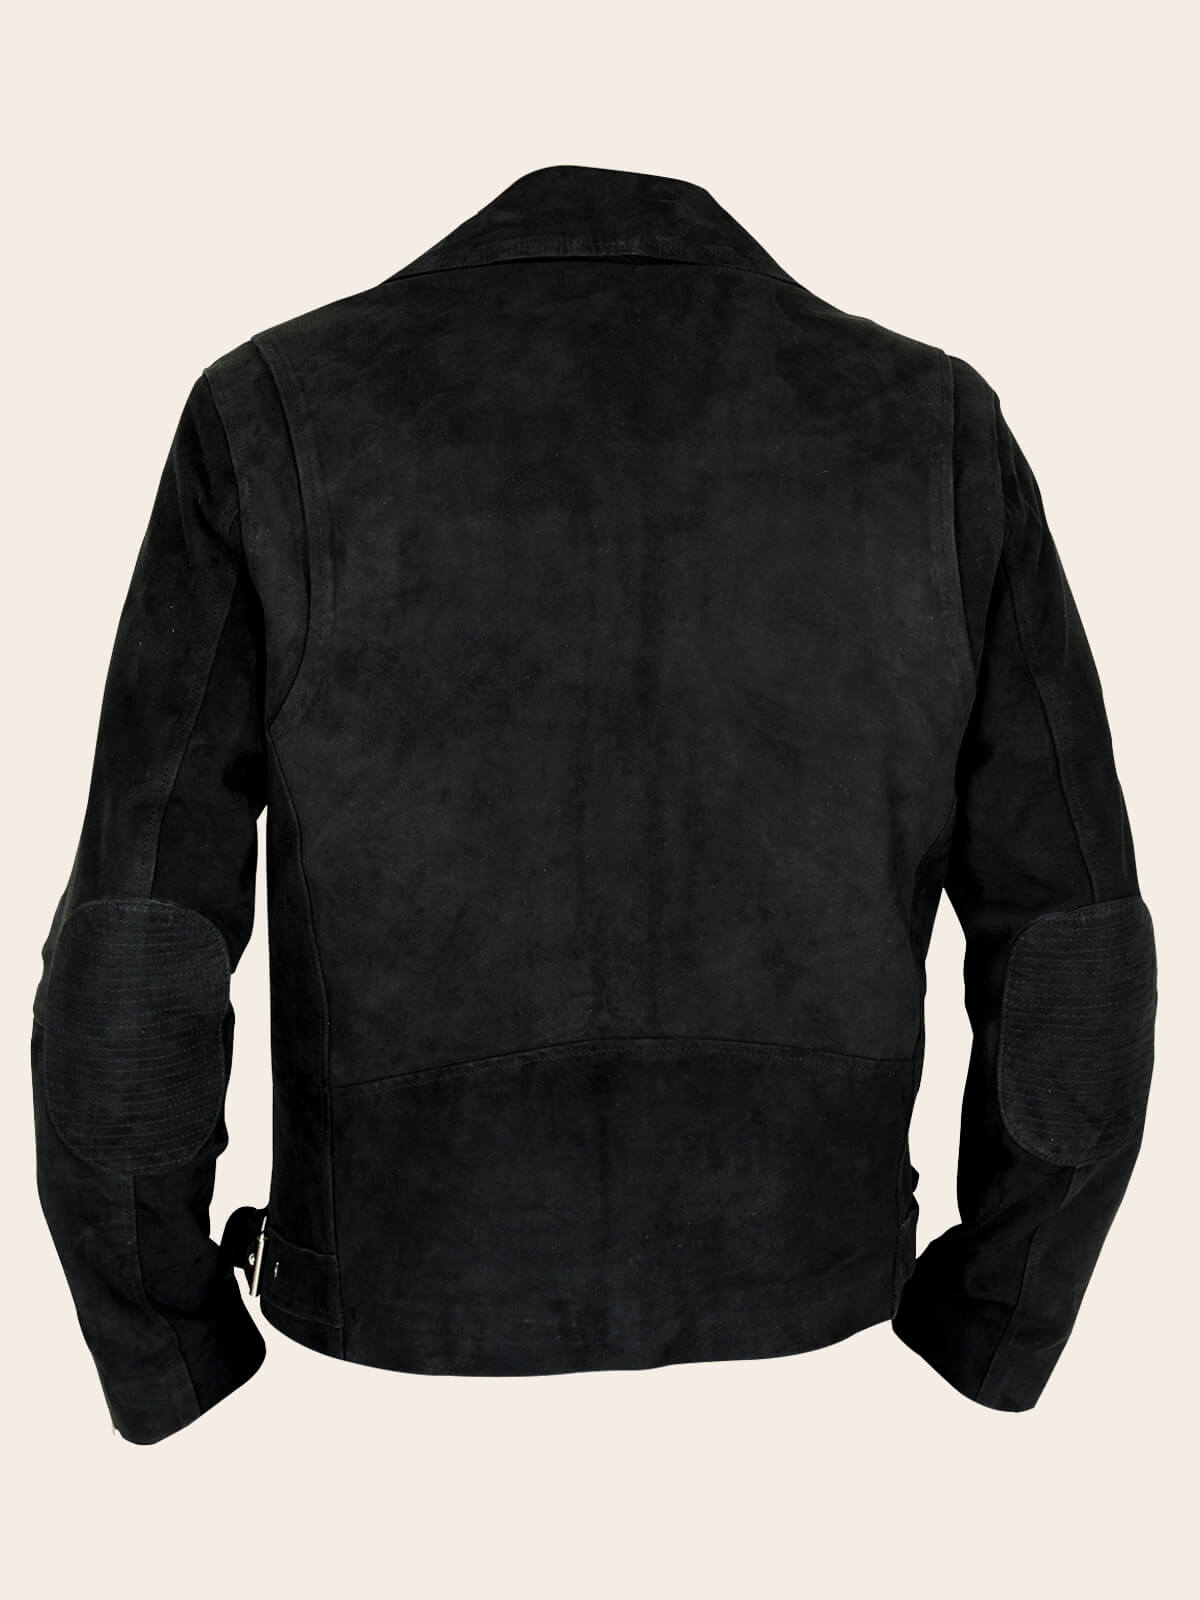 Mens Biker Leather Jacket In Black